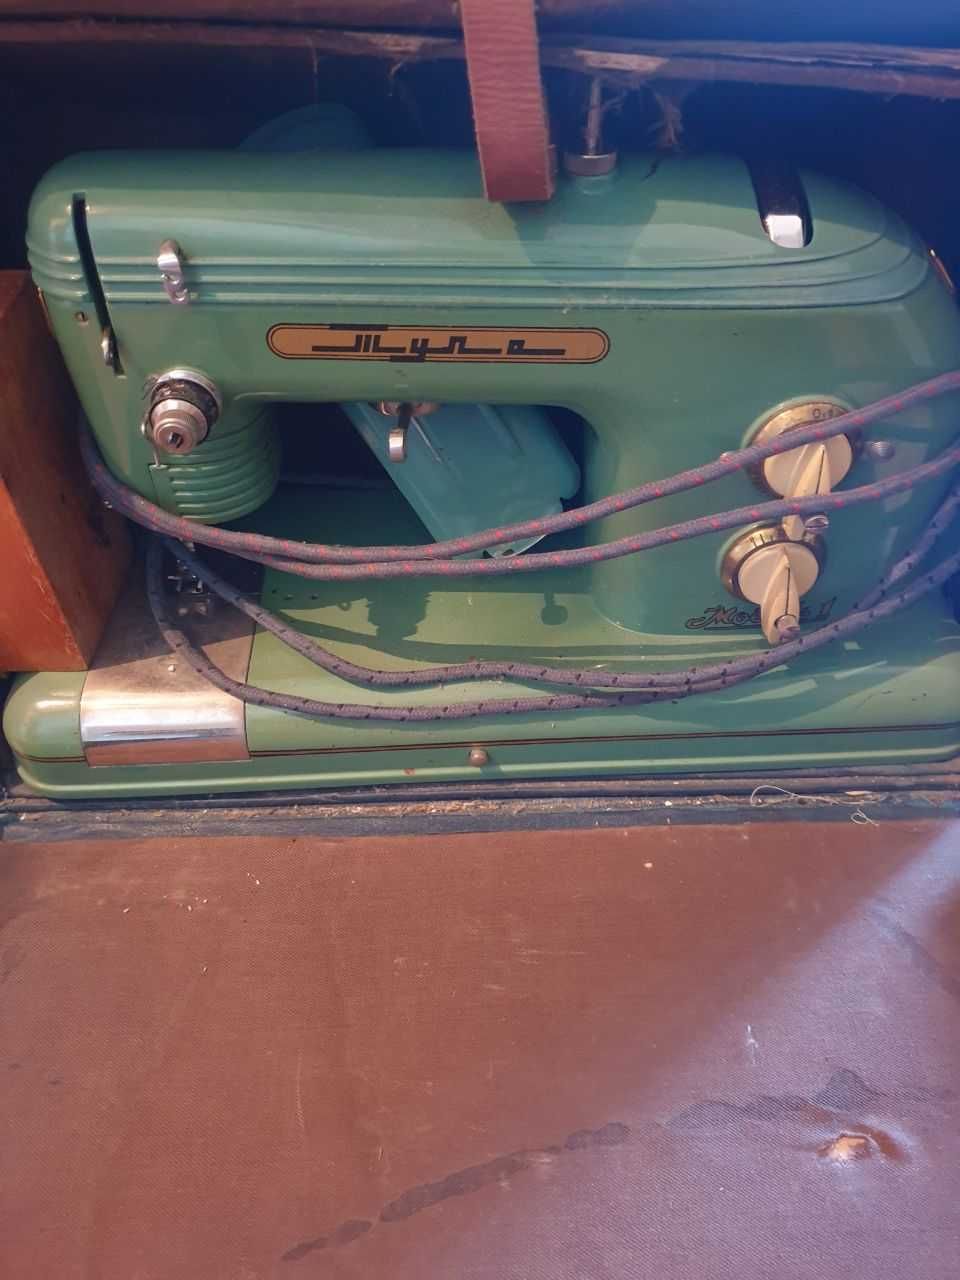 швейная машинка Тула в рабочем состоянии